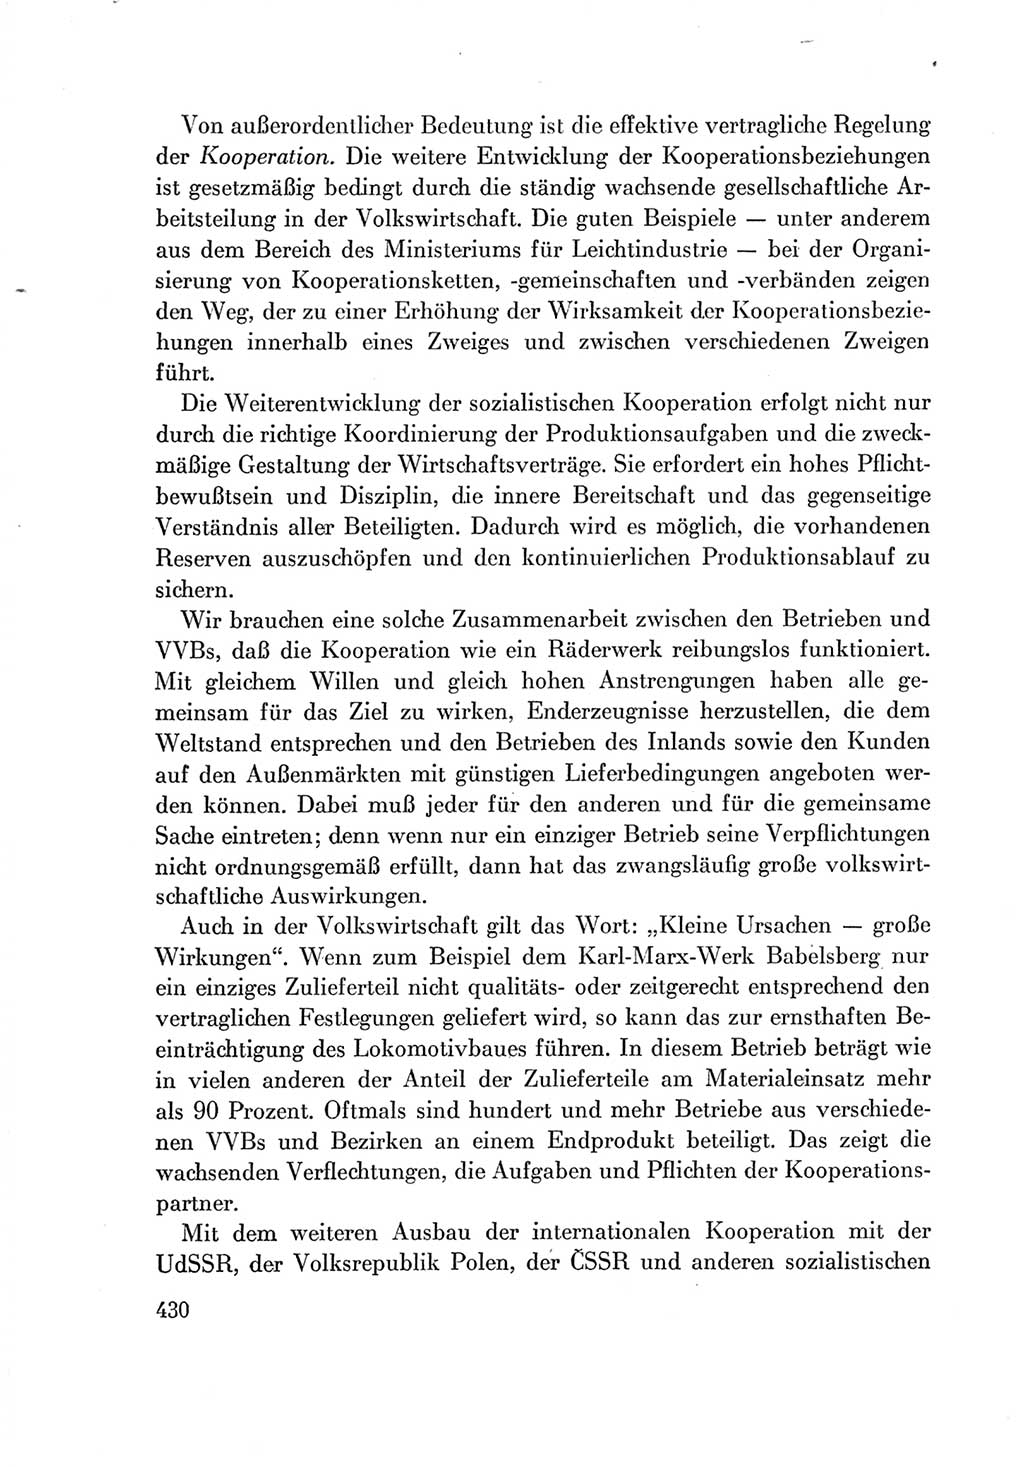 Protokoll der Verhandlungen des Ⅶ. Parteitages der Sozialistischen Einheitspartei Deutschlands (SED) [Deutsche Demokratische Republik (DDR)] 1967, Band Ⅰ, Seite 430 (Prot. Verh. Ⅶ. PT SED DDR 1967, Bd. Ⅰ, S. 430)